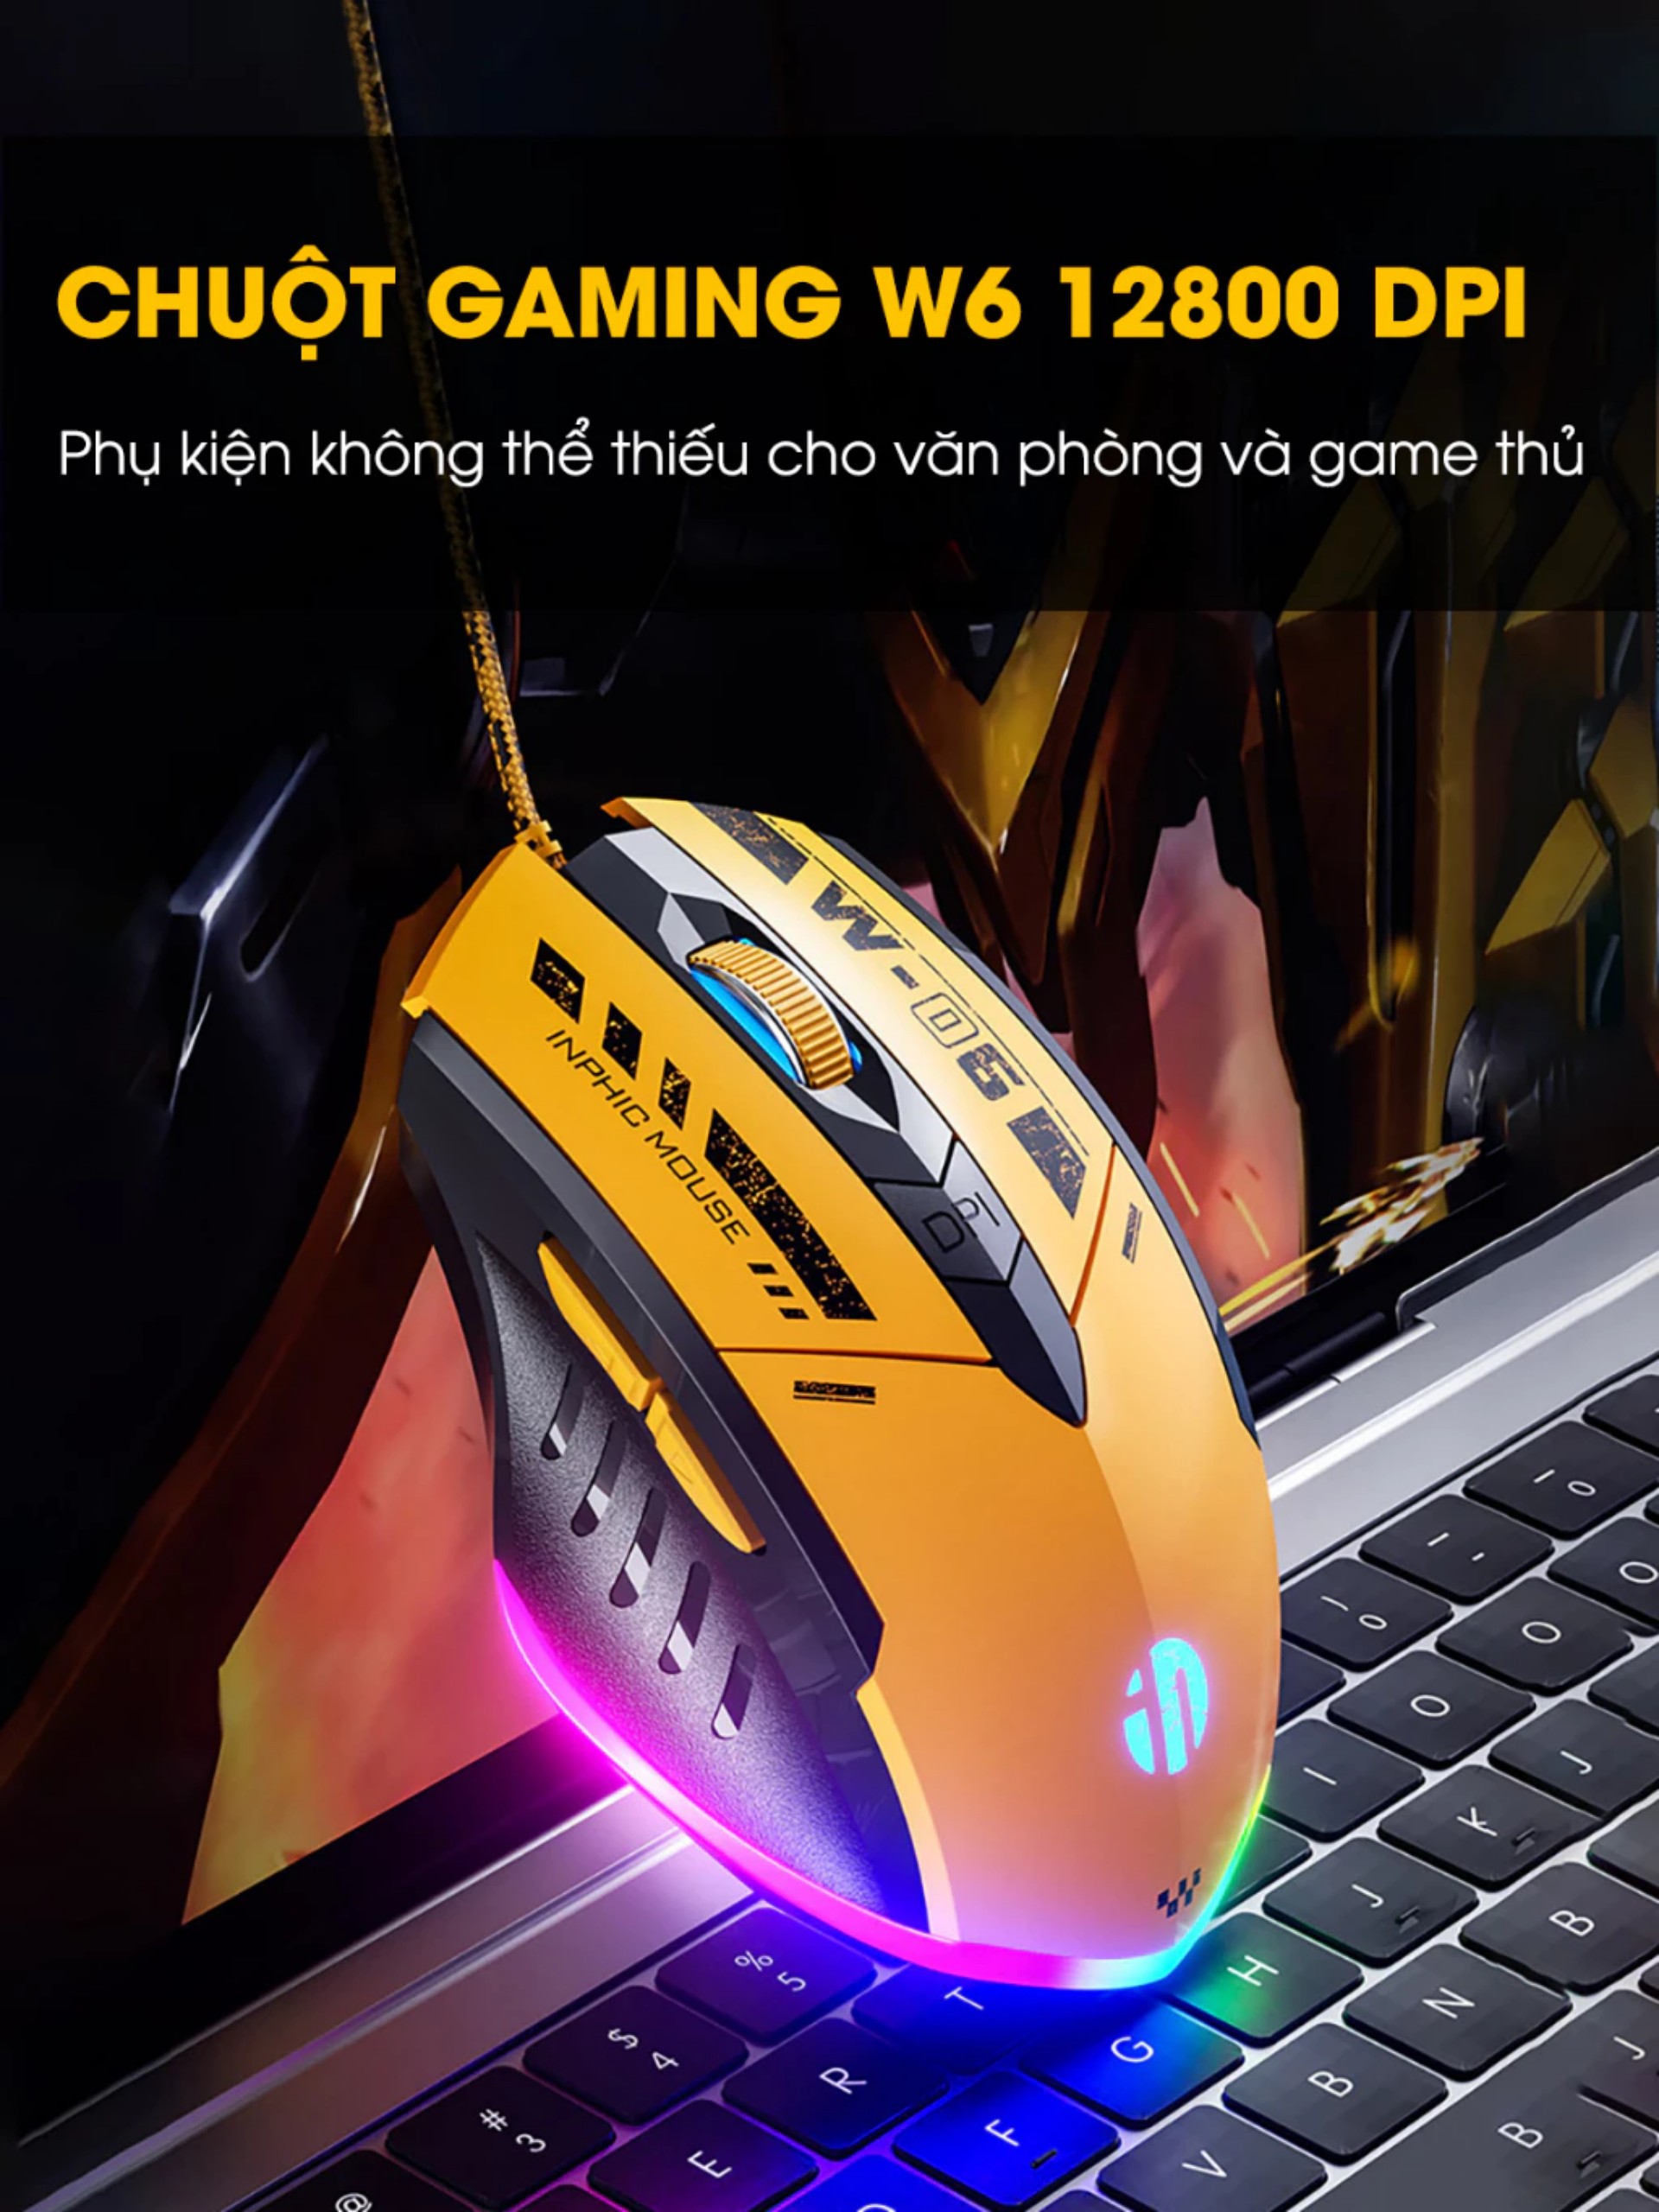 Chuột gaming máy tính có dây TEKKIN W6 12800 DPI có 6 nút hỗ trợ app led RGB 16 triệu màu - hàng chính hãng